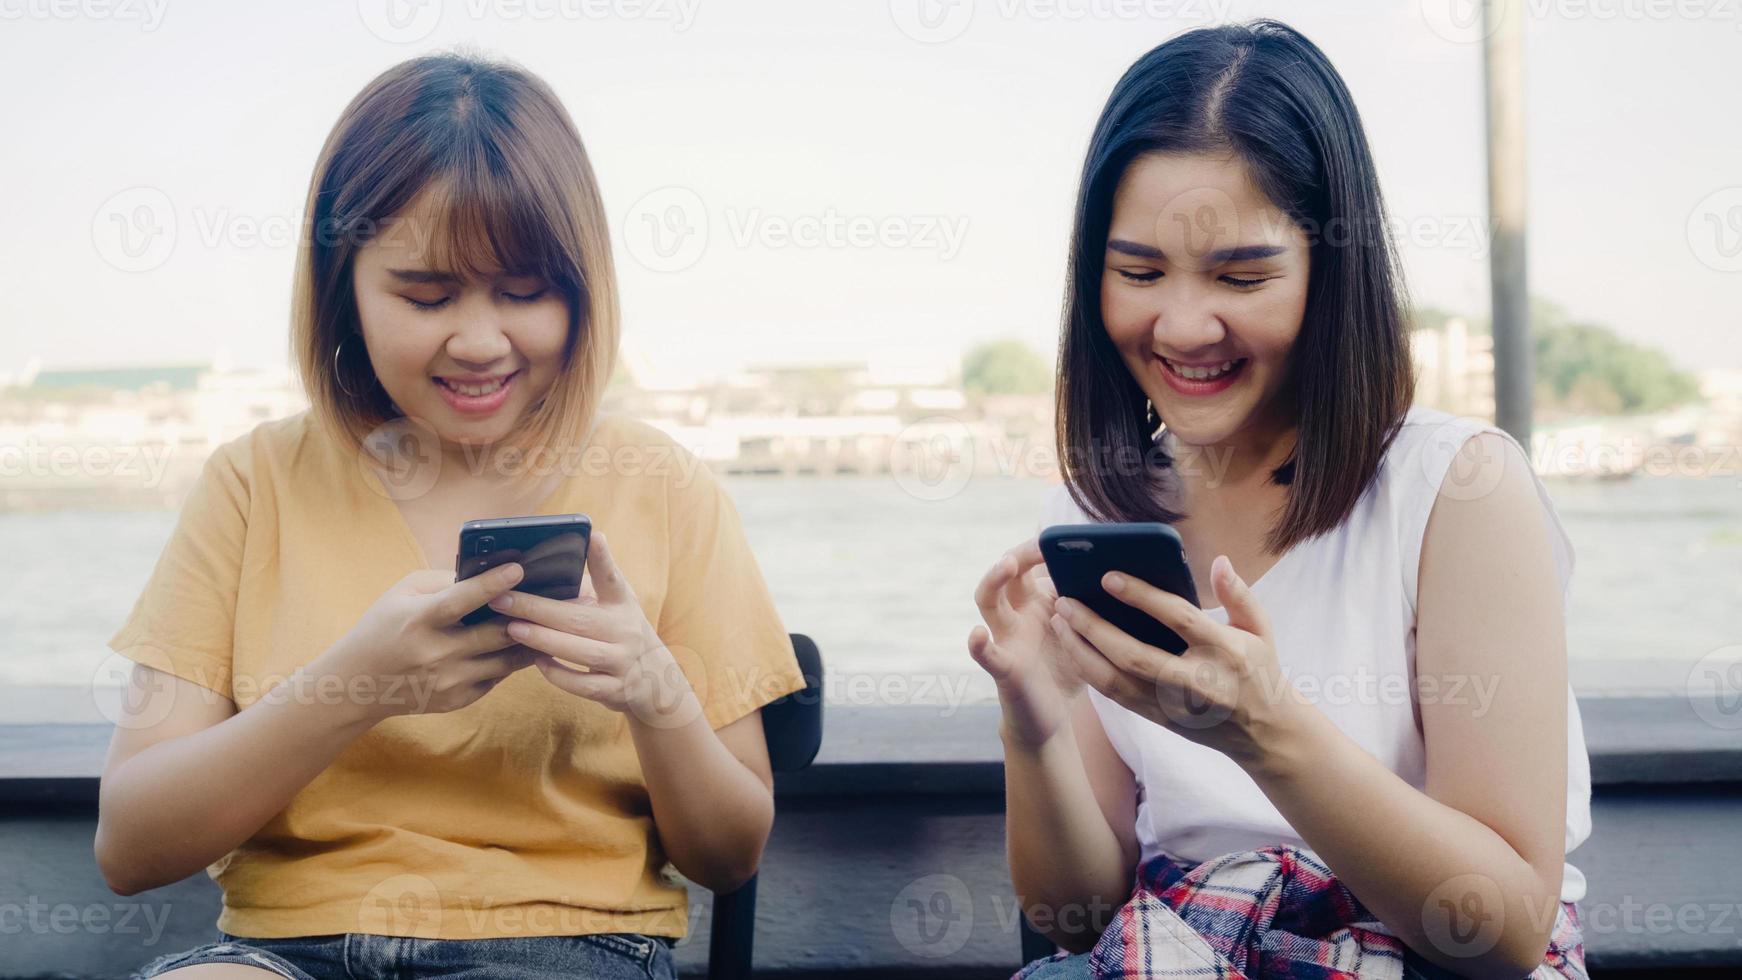 Las jóvenes asiáticas, amigas cercanas, turistas con disfrute informal con un teléfono inteligente comparten una foto en las redes sociales en línea frente al río del puerto de vista en el café de la ciudad, concepto de vacaciones de viaje turístico de estilo de vida.